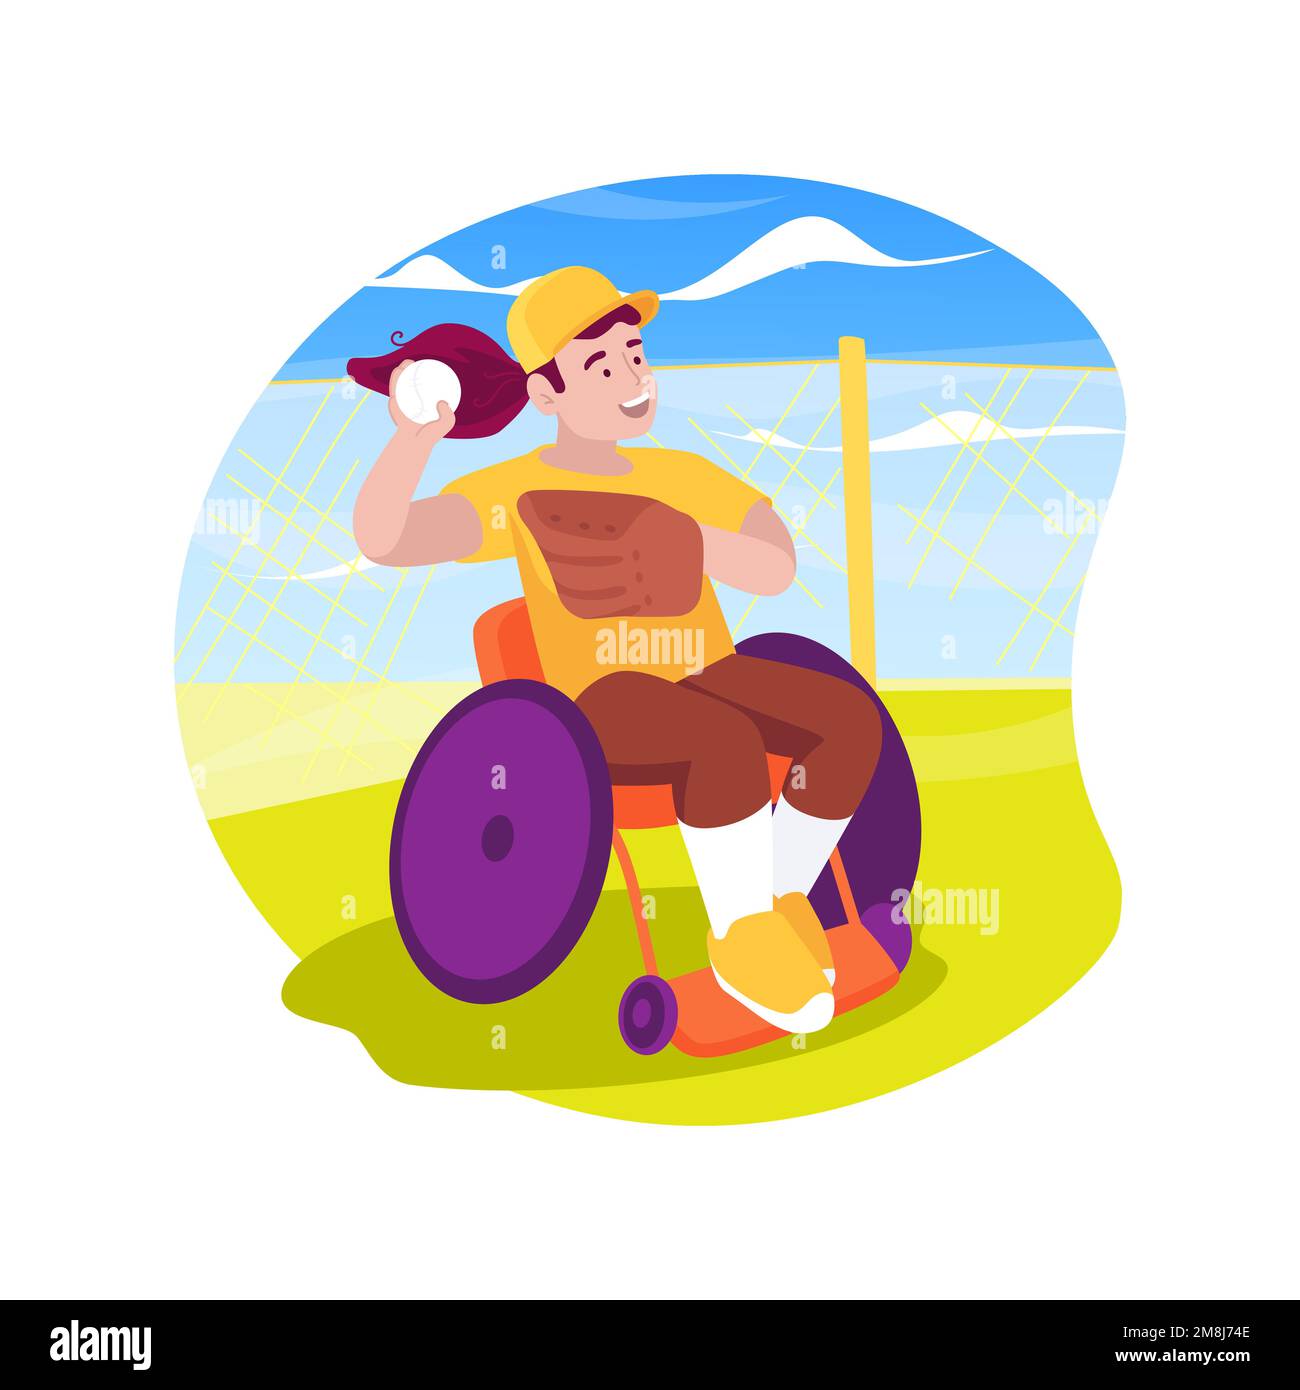 Baseball-isolierte Cartoon-Vektordarstellung. Behindertes Kind in einem Rollstuhl mit spezieller Ausrüstung, Baseball spielen, Behindertenleben, phy Stock Vektor